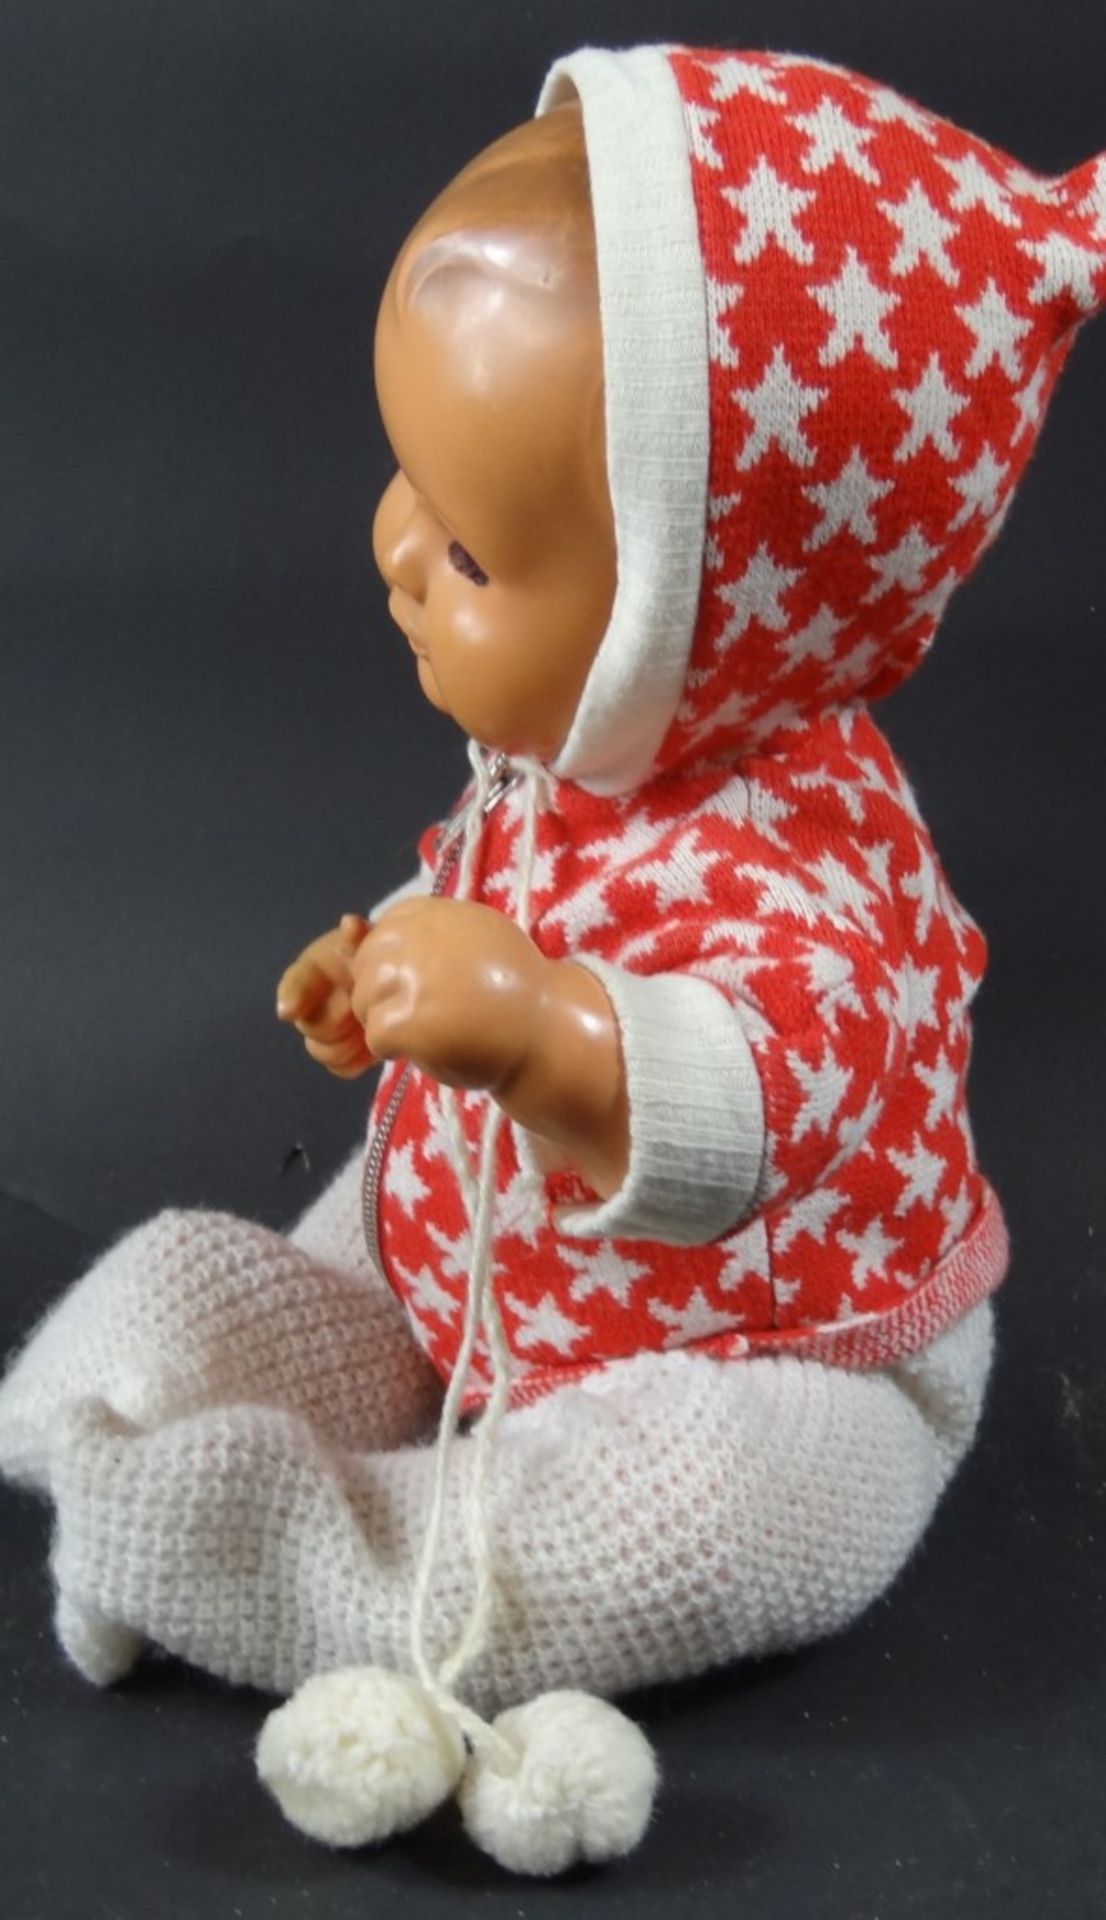 Schildkröt-Puppe, L. 35 cm, Glieder beweglich, Gebrauchsspuren vorhanden - Image 2 of 6